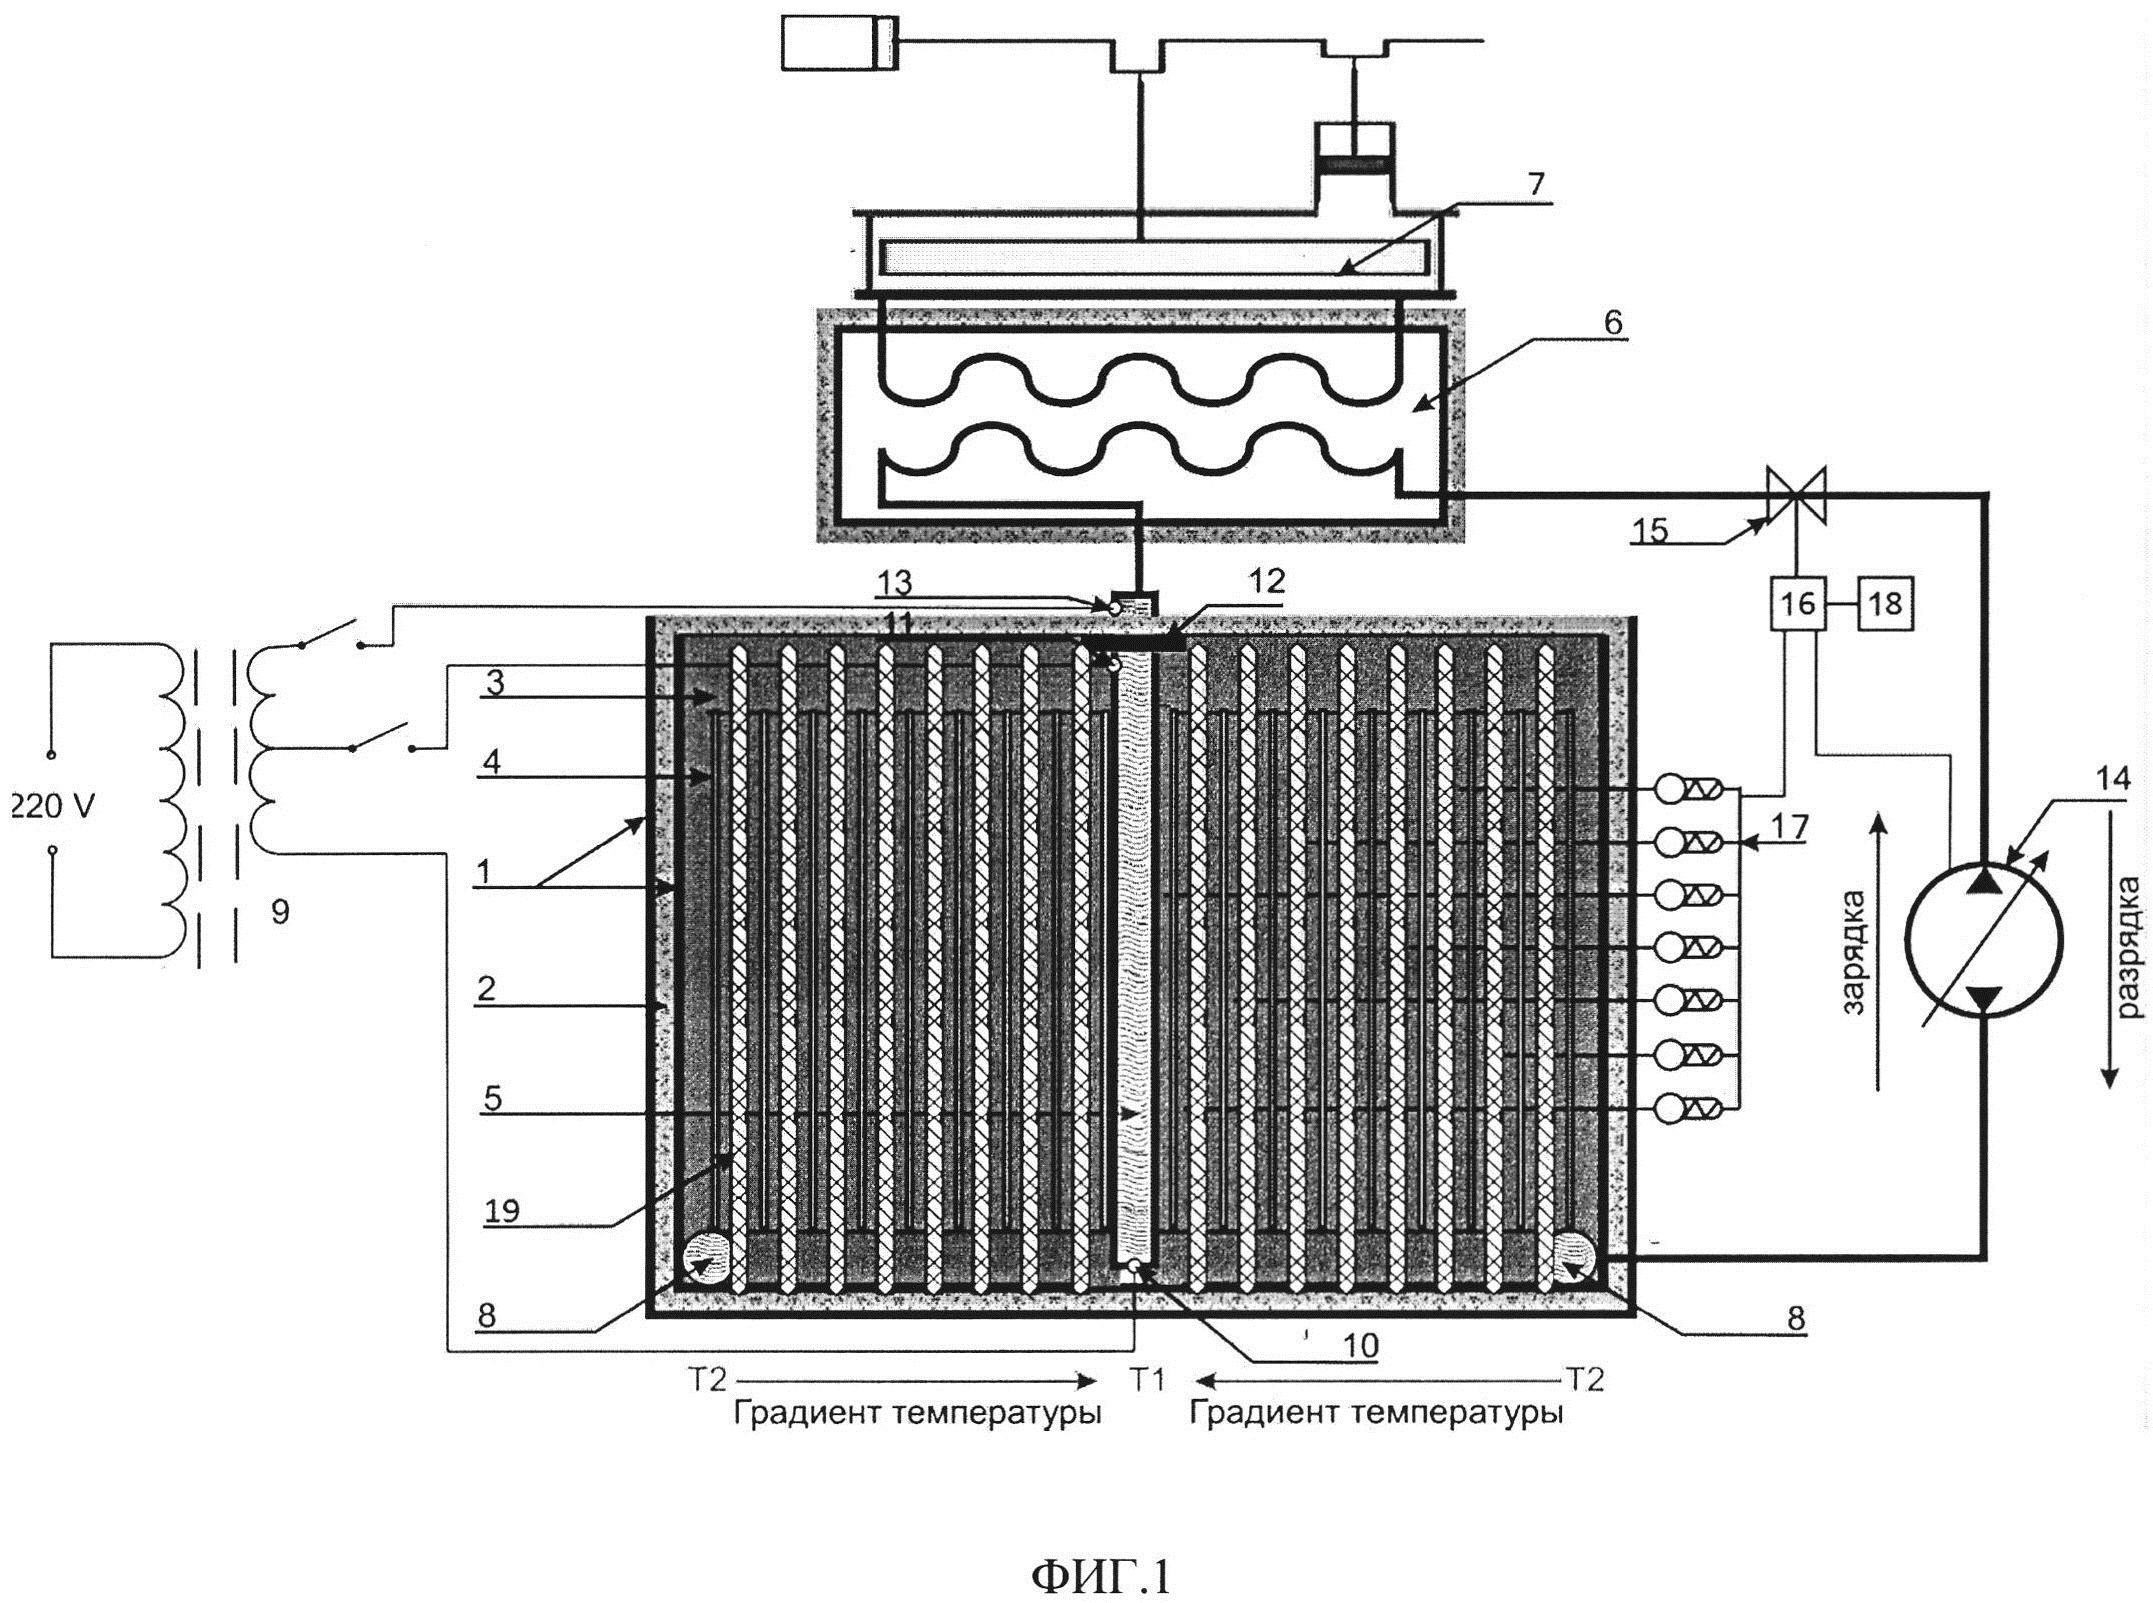 Аккумулятор тепловой энергии с регулируемой теплоотдачей при постоянной температуре